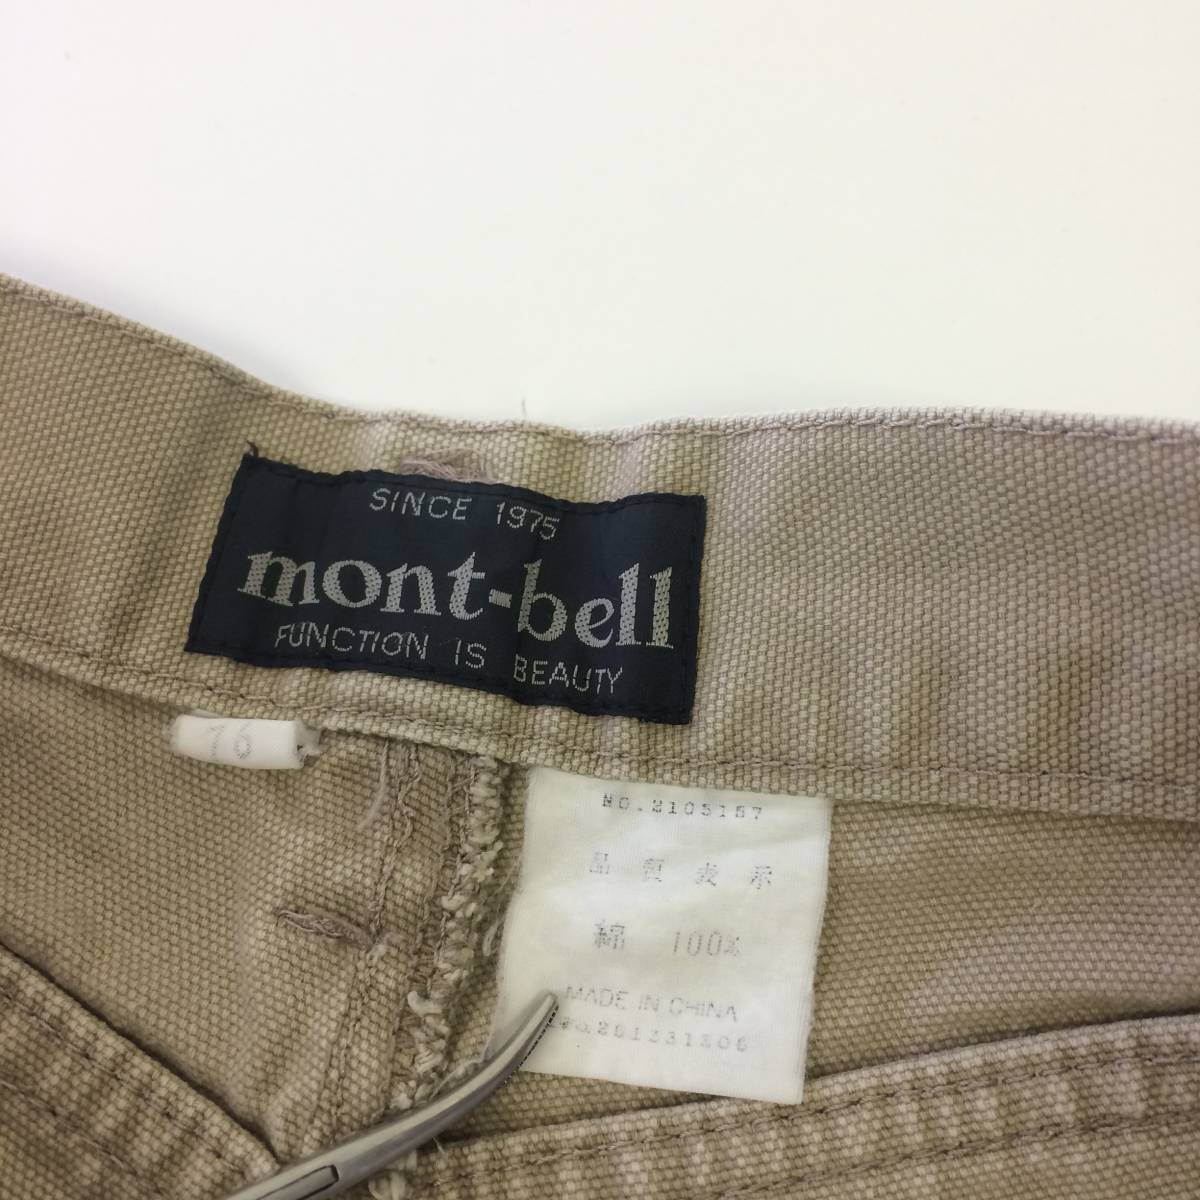  Mont-bell モンベル ダブルニー ダックパンツ 76cm 90s